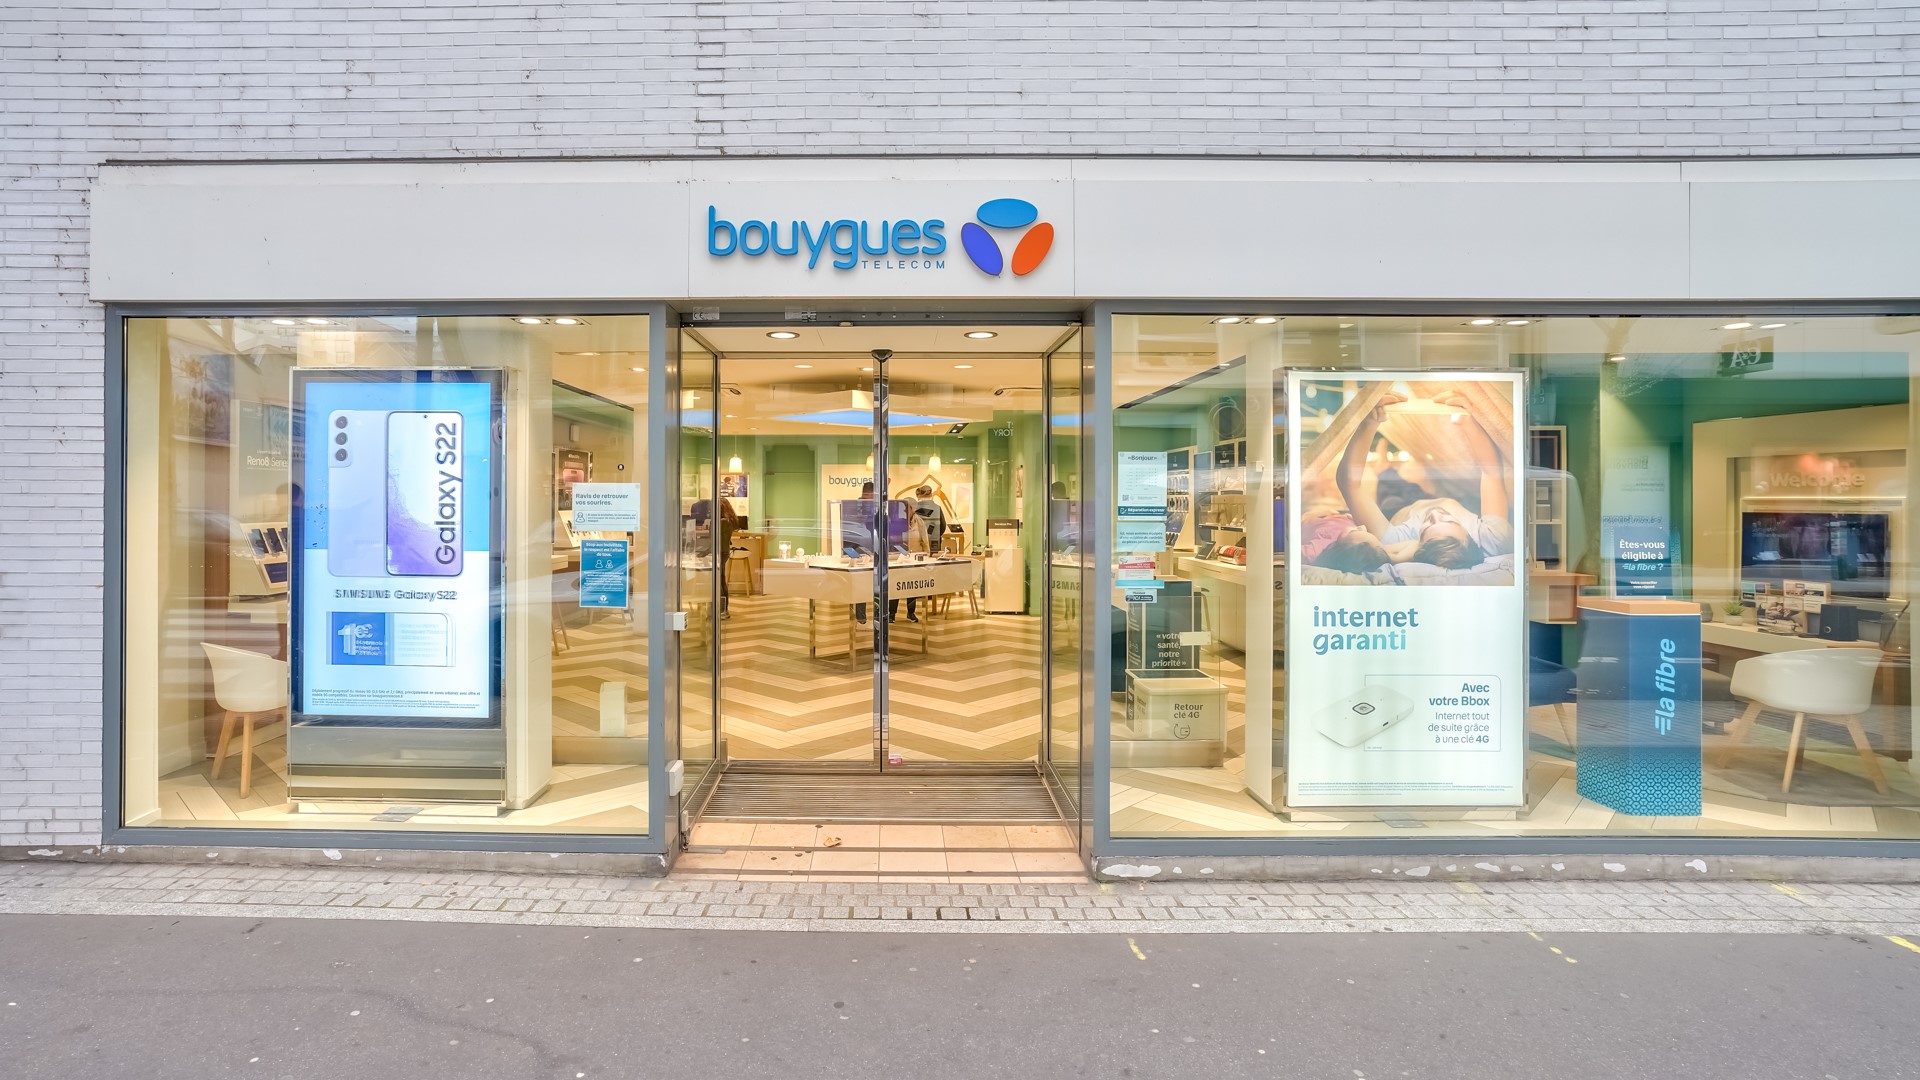 Boutique BOUYGUES TELECOM BOULOGNE BILLANCOURT